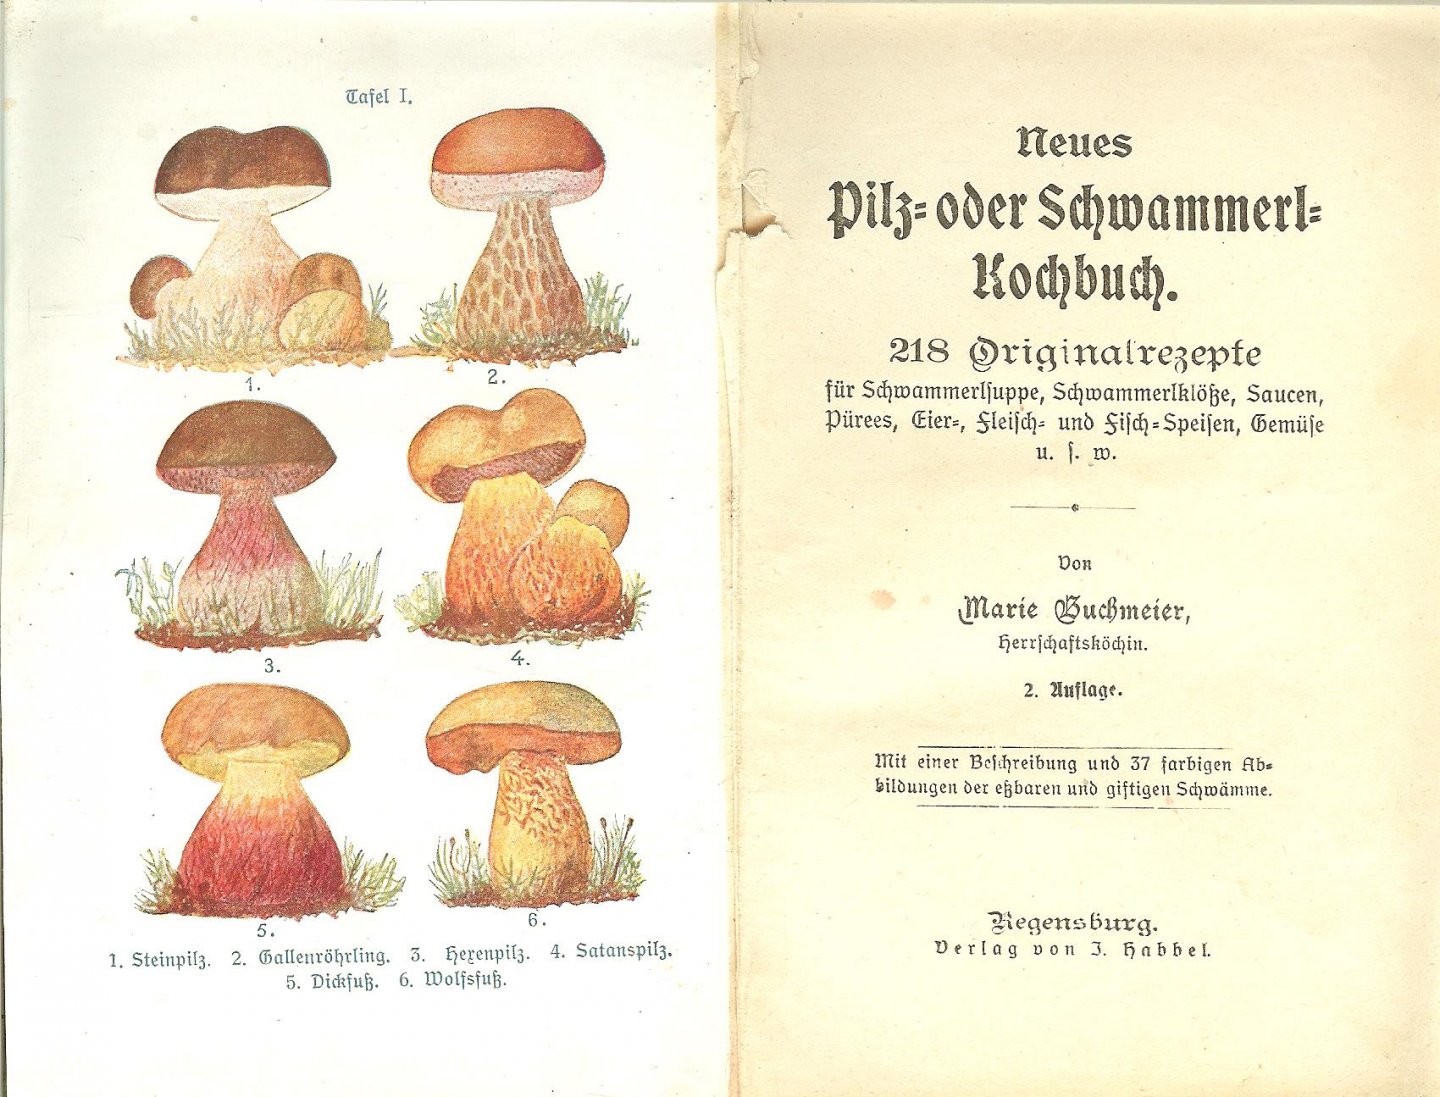 Buchmeier Marie Kochen und Genießen - Neues Pilz- oder Schwammerl-Kochbuch., - 218 Originalrezepte.